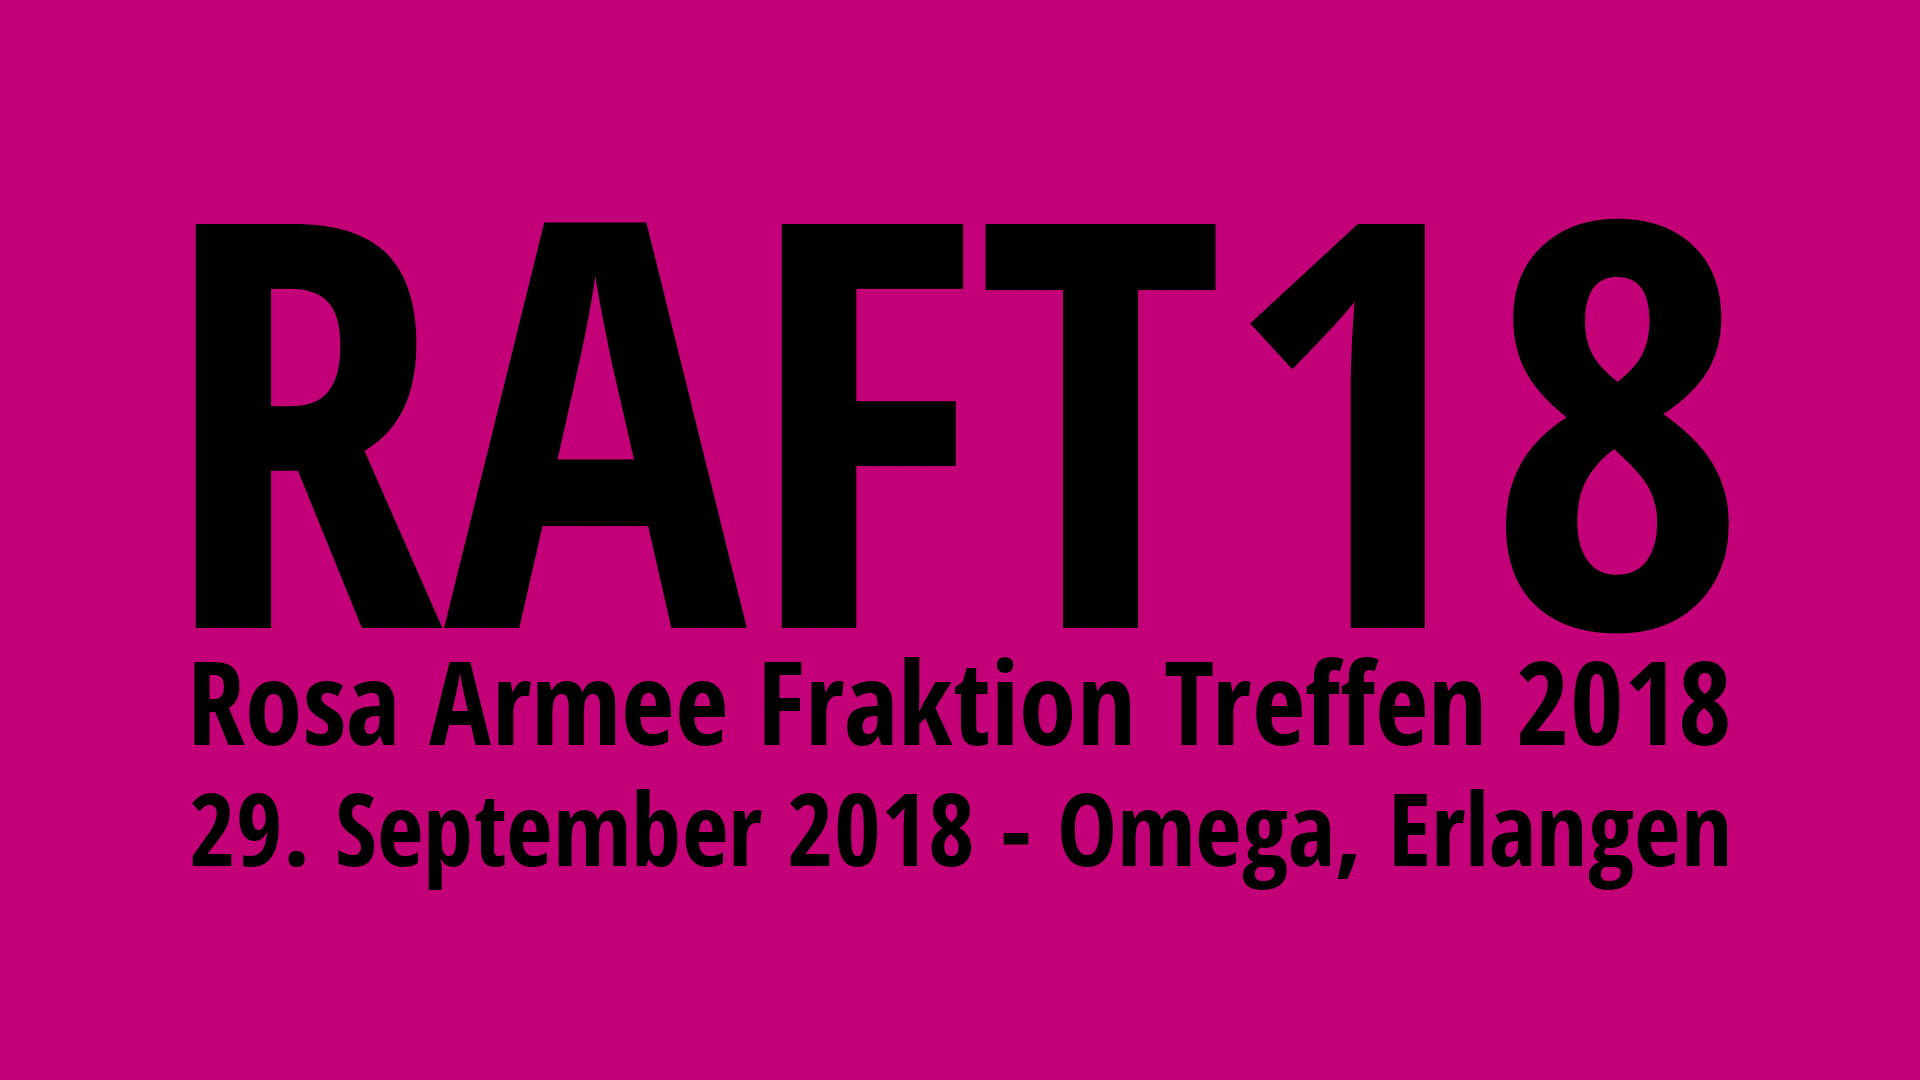 RAFT18 - Rosa Armee Fraktion Treffen 2018 | 29. September 2018 - Omega, Erlangen